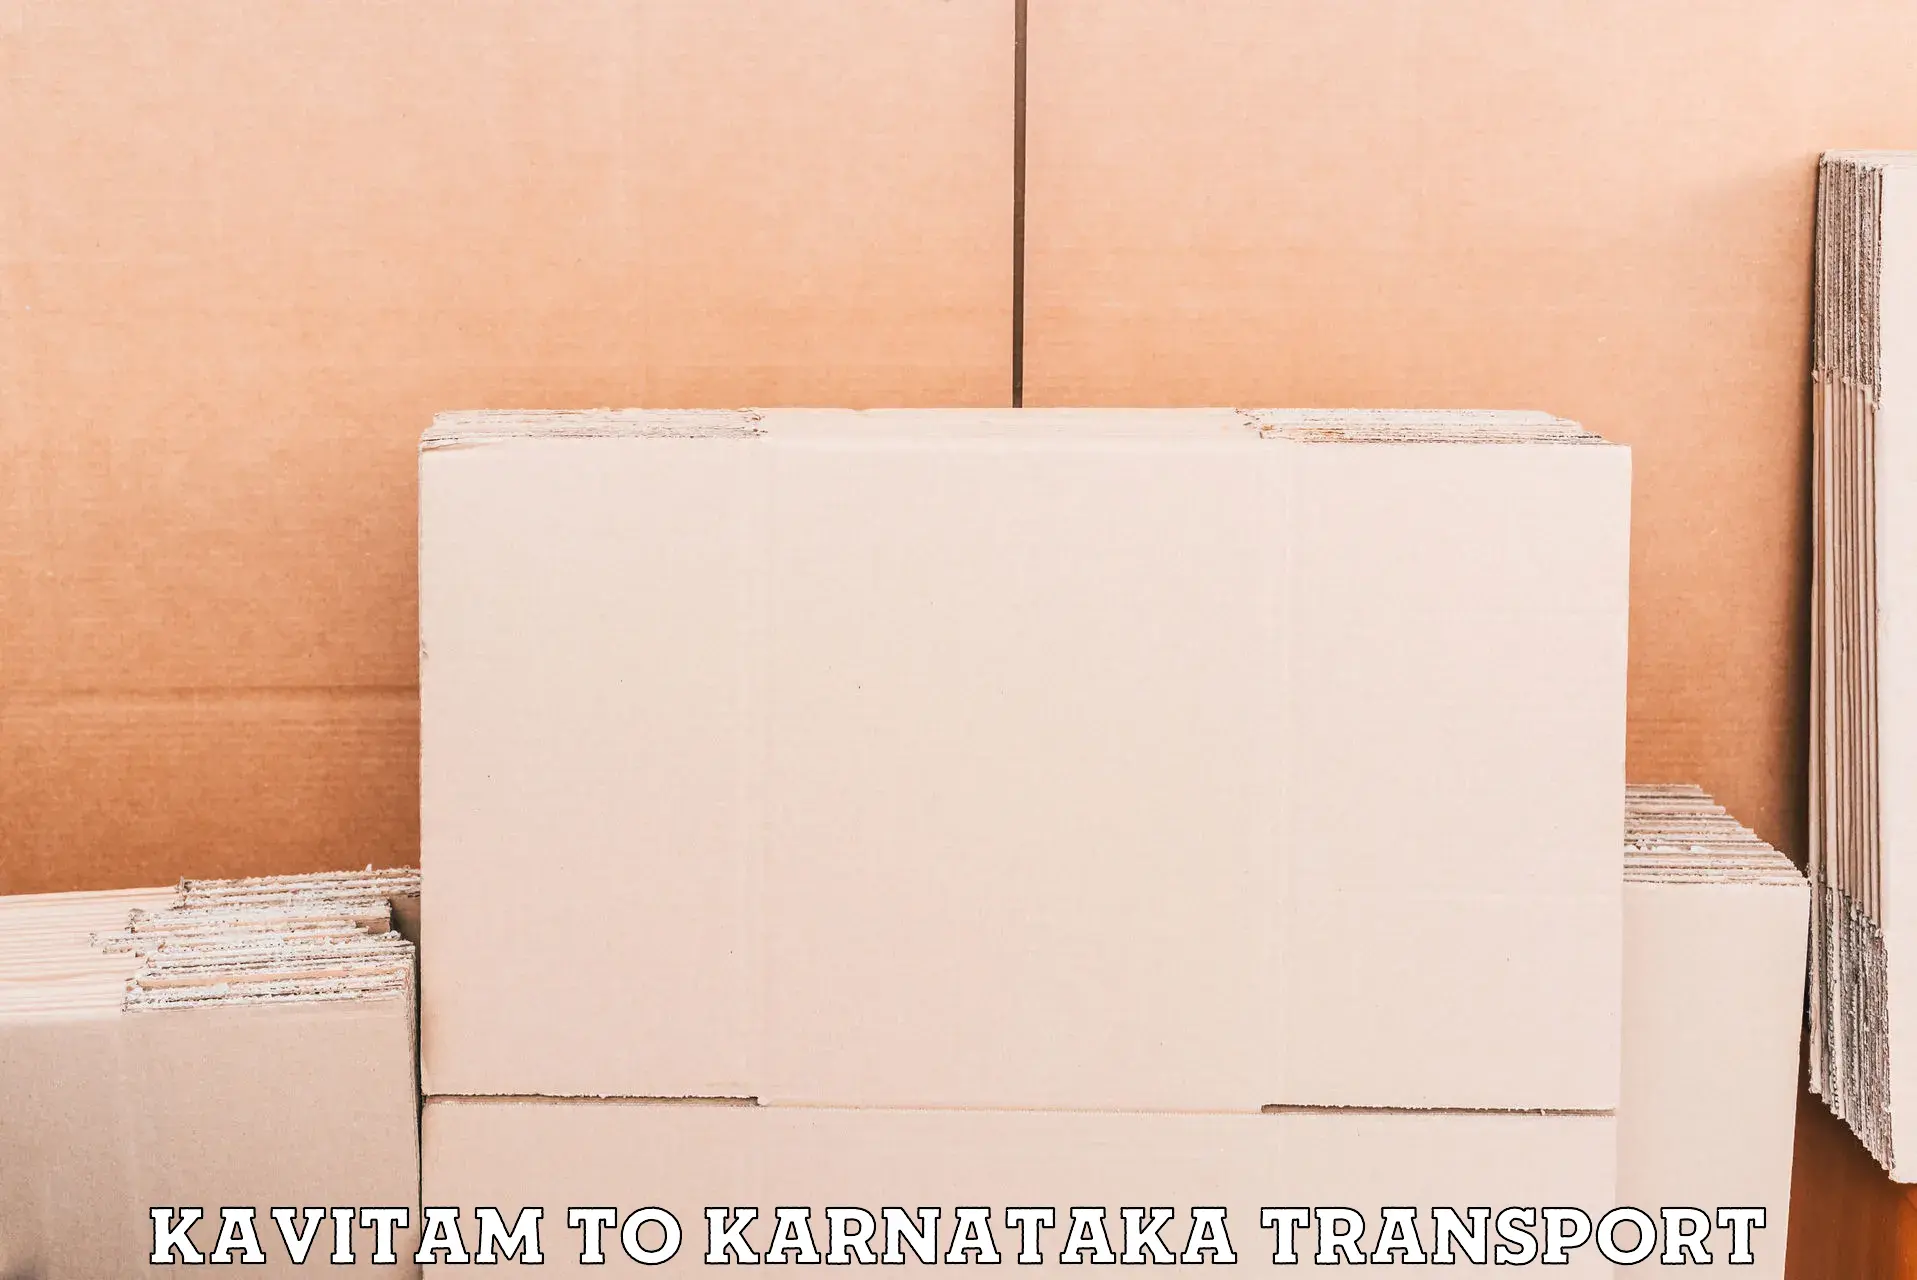 Commercial transport service Kavitam to Kolhar